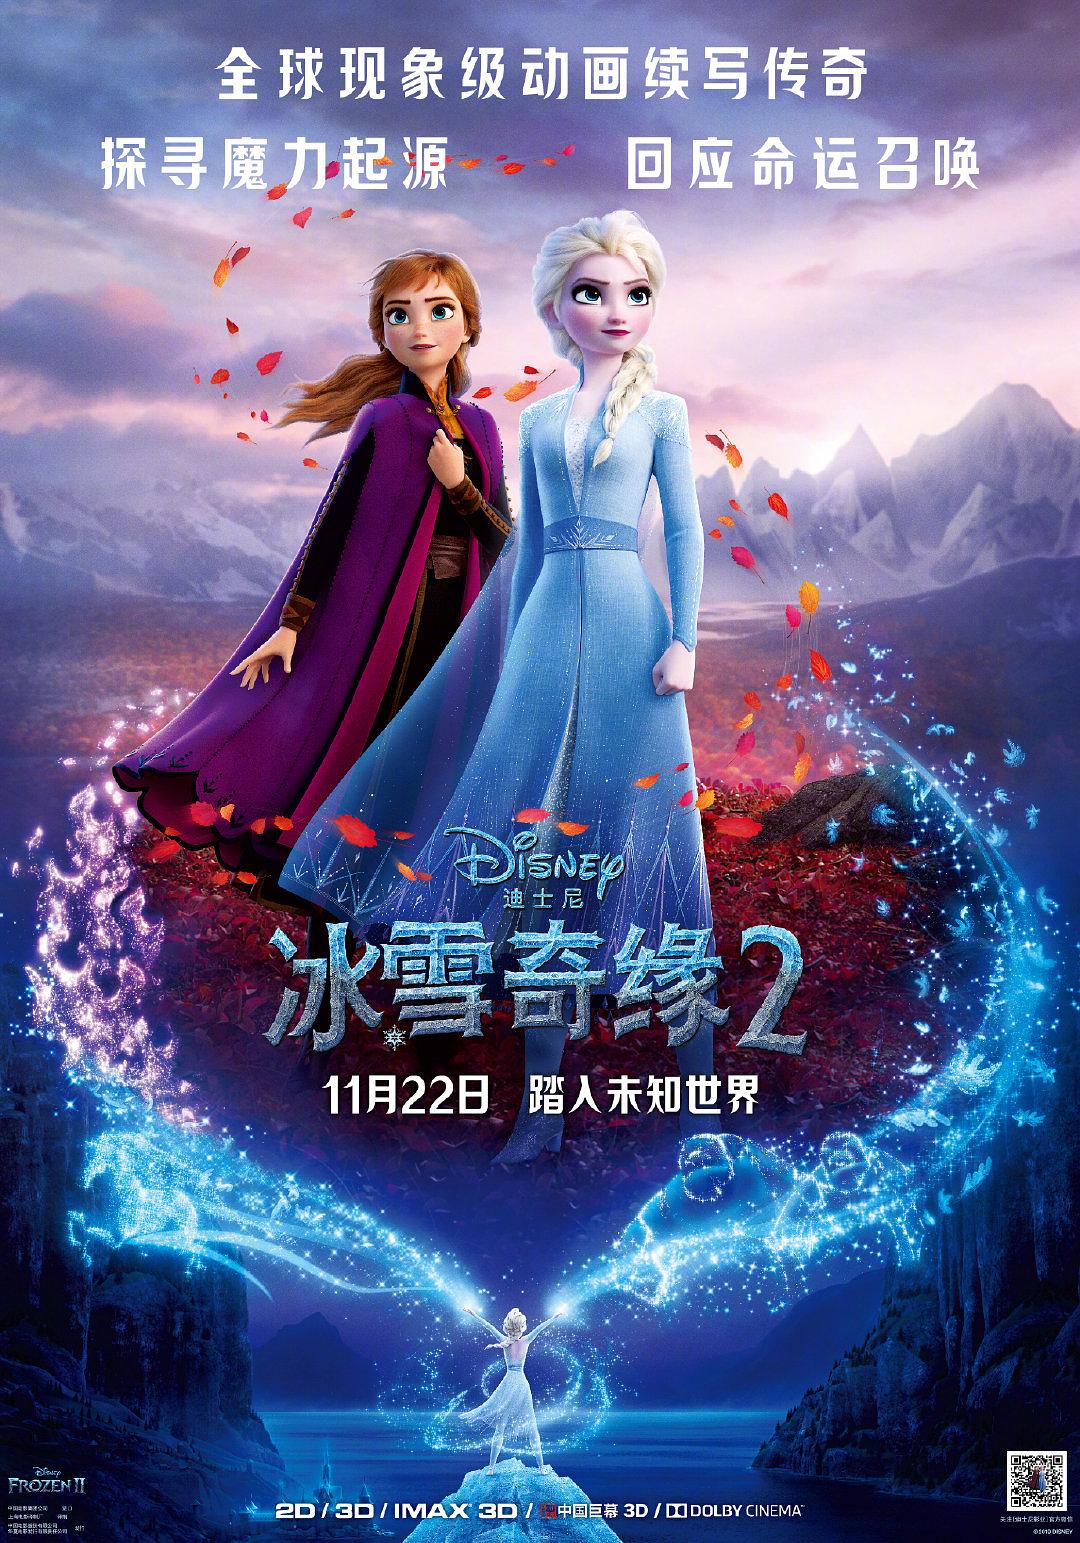 冰雪奇缘2 Frozen.II.2019.1080p.3D.BluRay.AVC.DTS-HD.MA.7.1-EXTREME 40.58GB-1.png